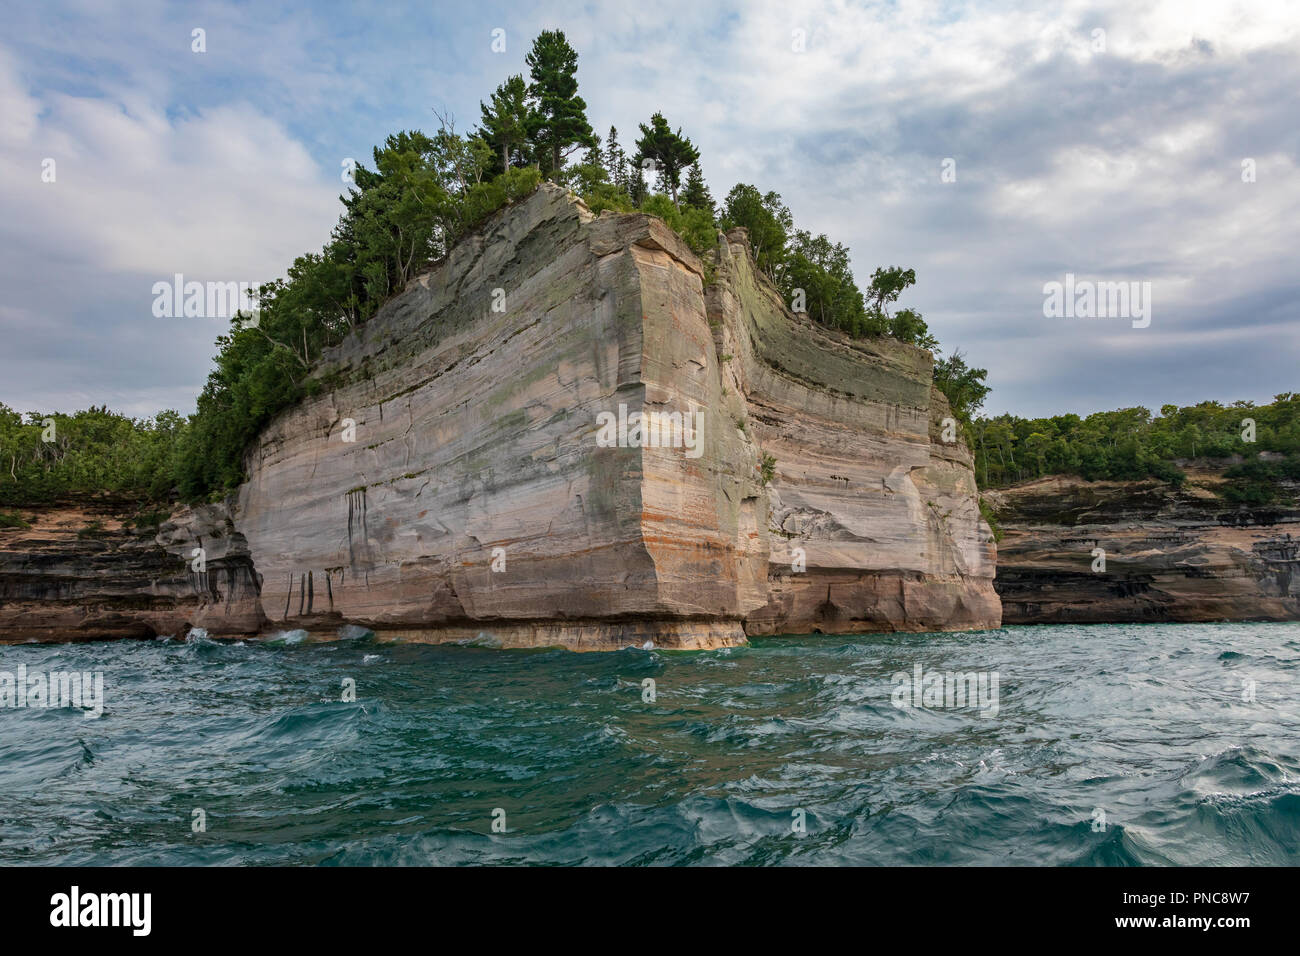 Un punto roccioso, coperta da alberi, visualizza la scogliera a Pictured Rocks National Lakeshore in Munising Michigan. Il punto è circondato dal w Foto Stock